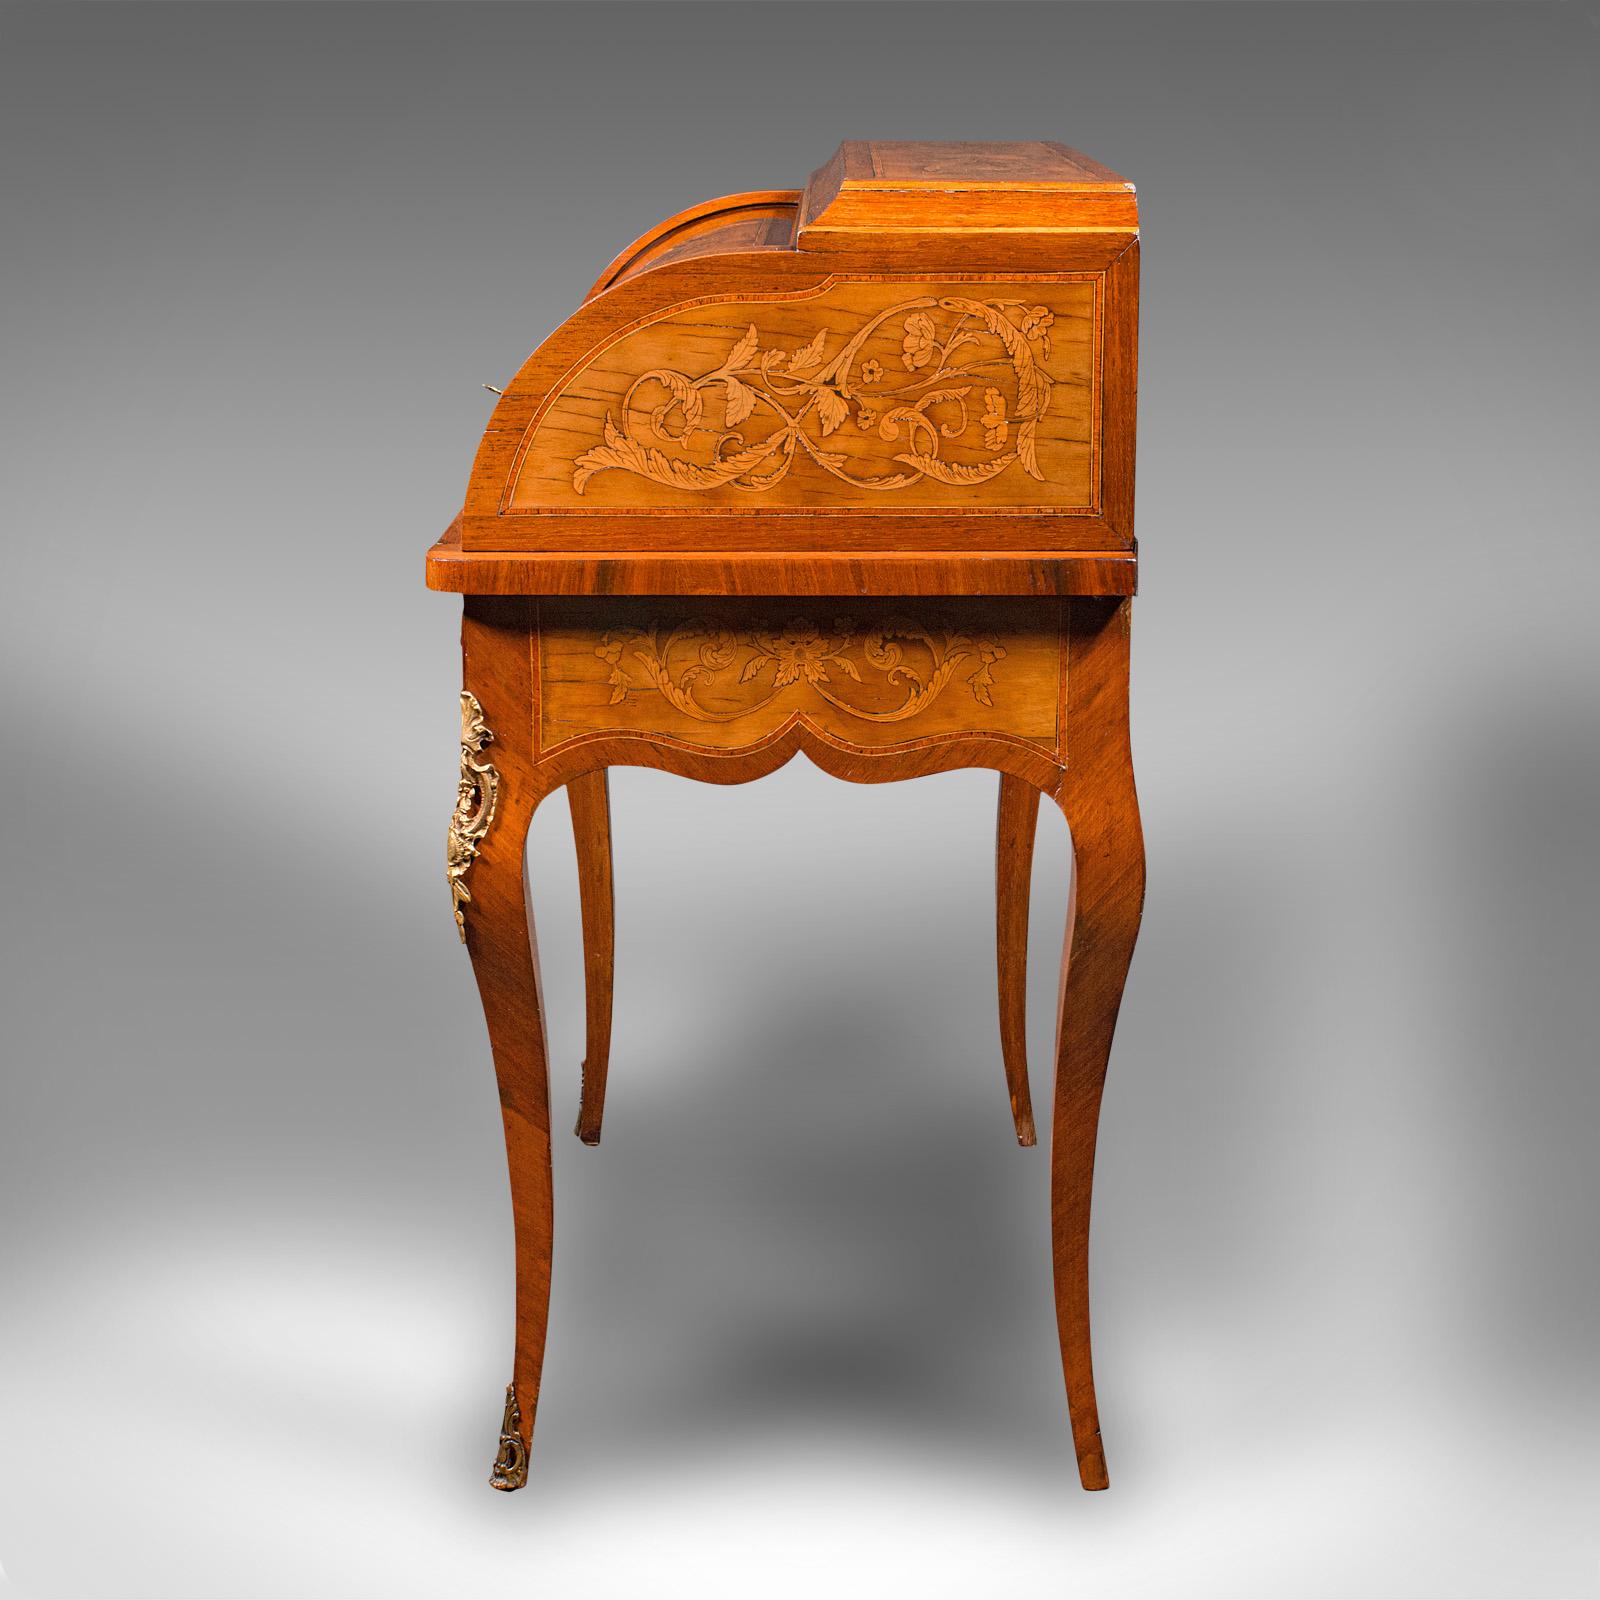 Antique Ladies Writing Desk, French, Walnut, Table, Bonheur Du Jour, Victorian 2